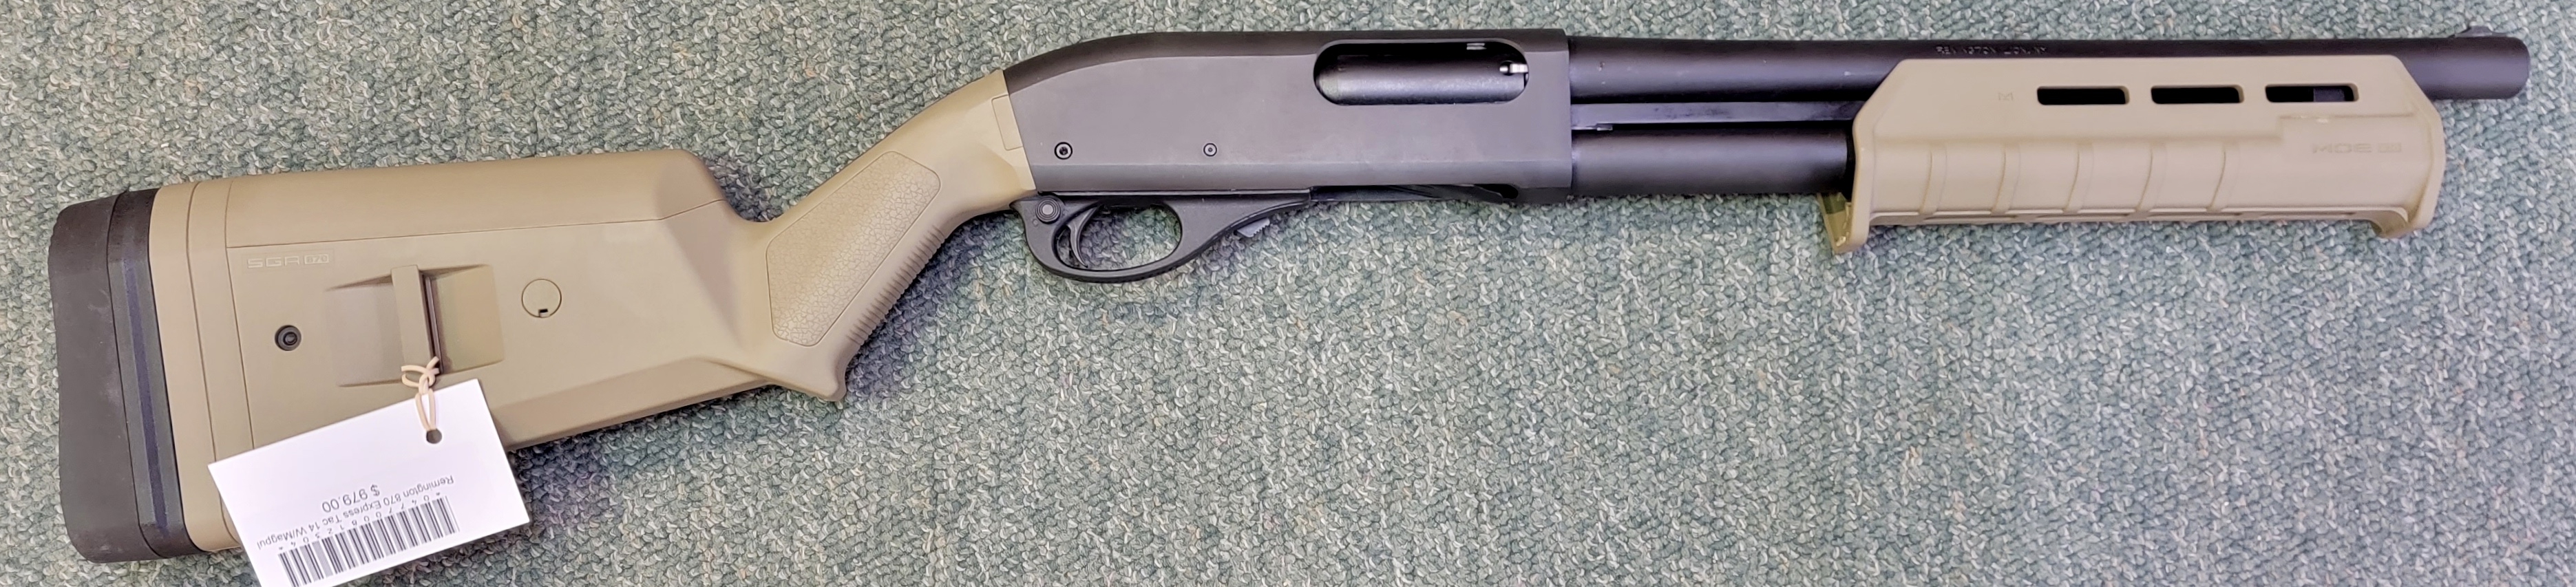 Remington 870 Express Tac 14 with Magpul